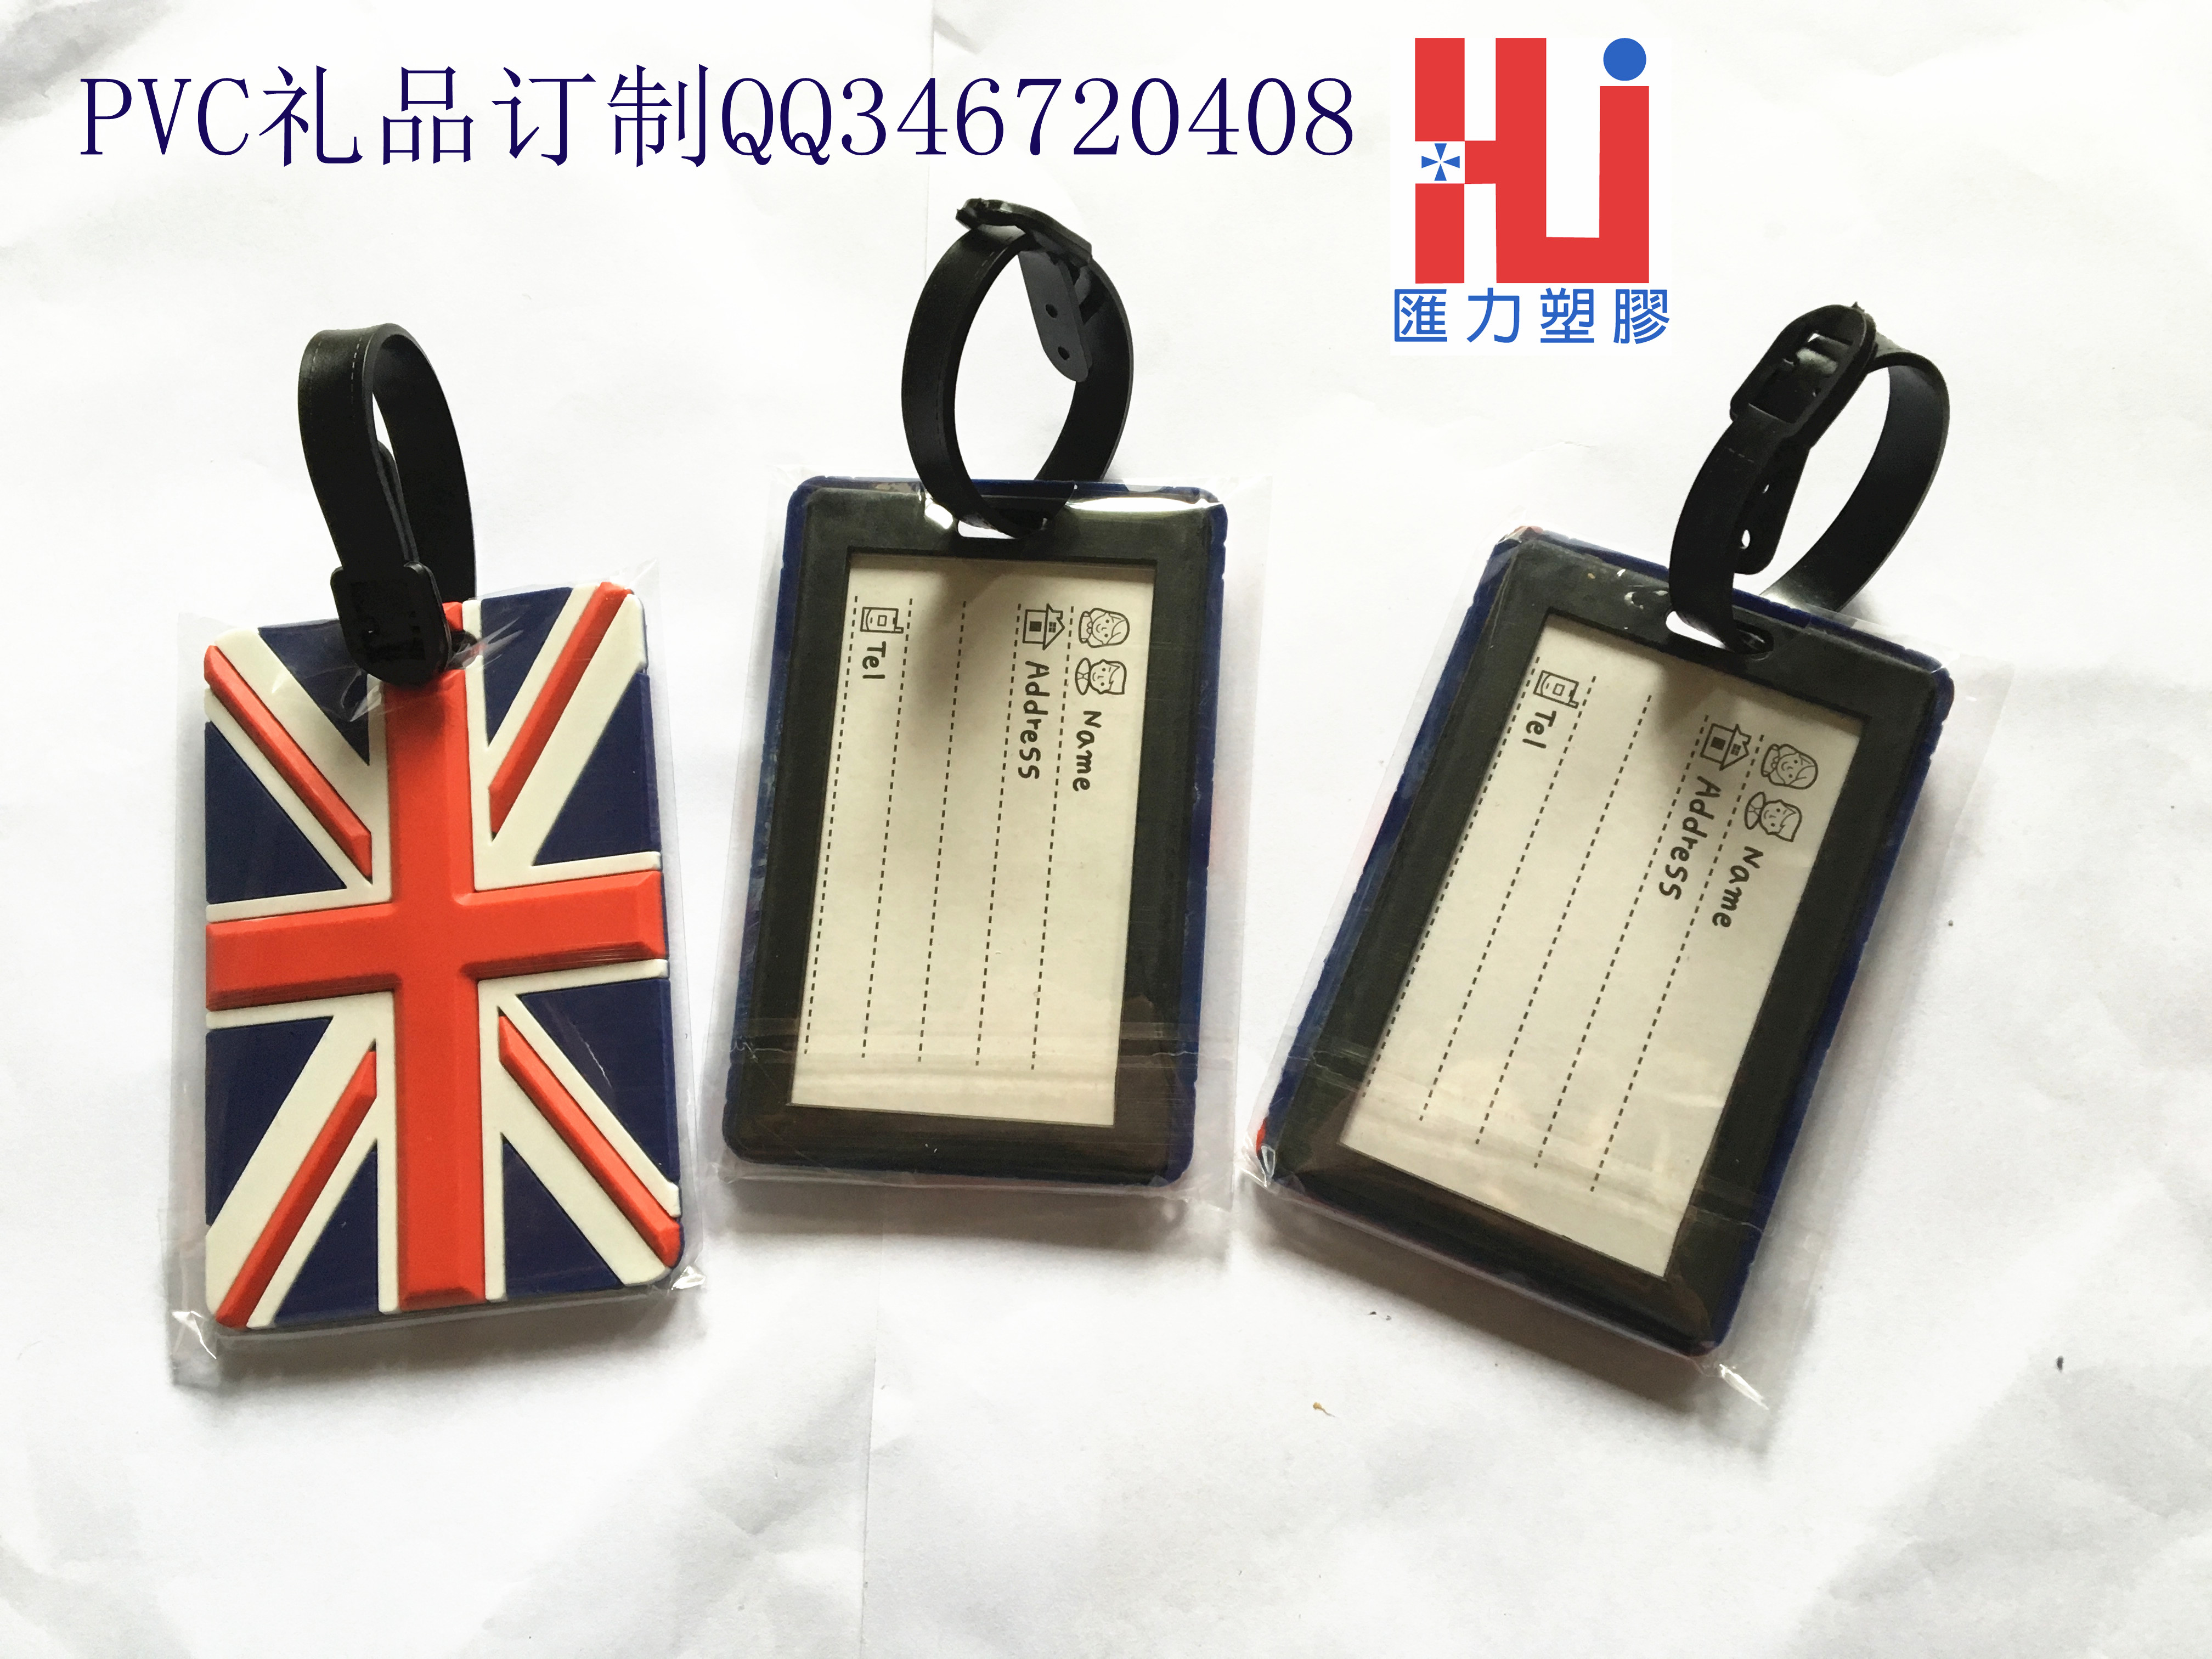 供应用于行李箱挂牌的PVC软胶行李牌 英国国旗行李牌图片